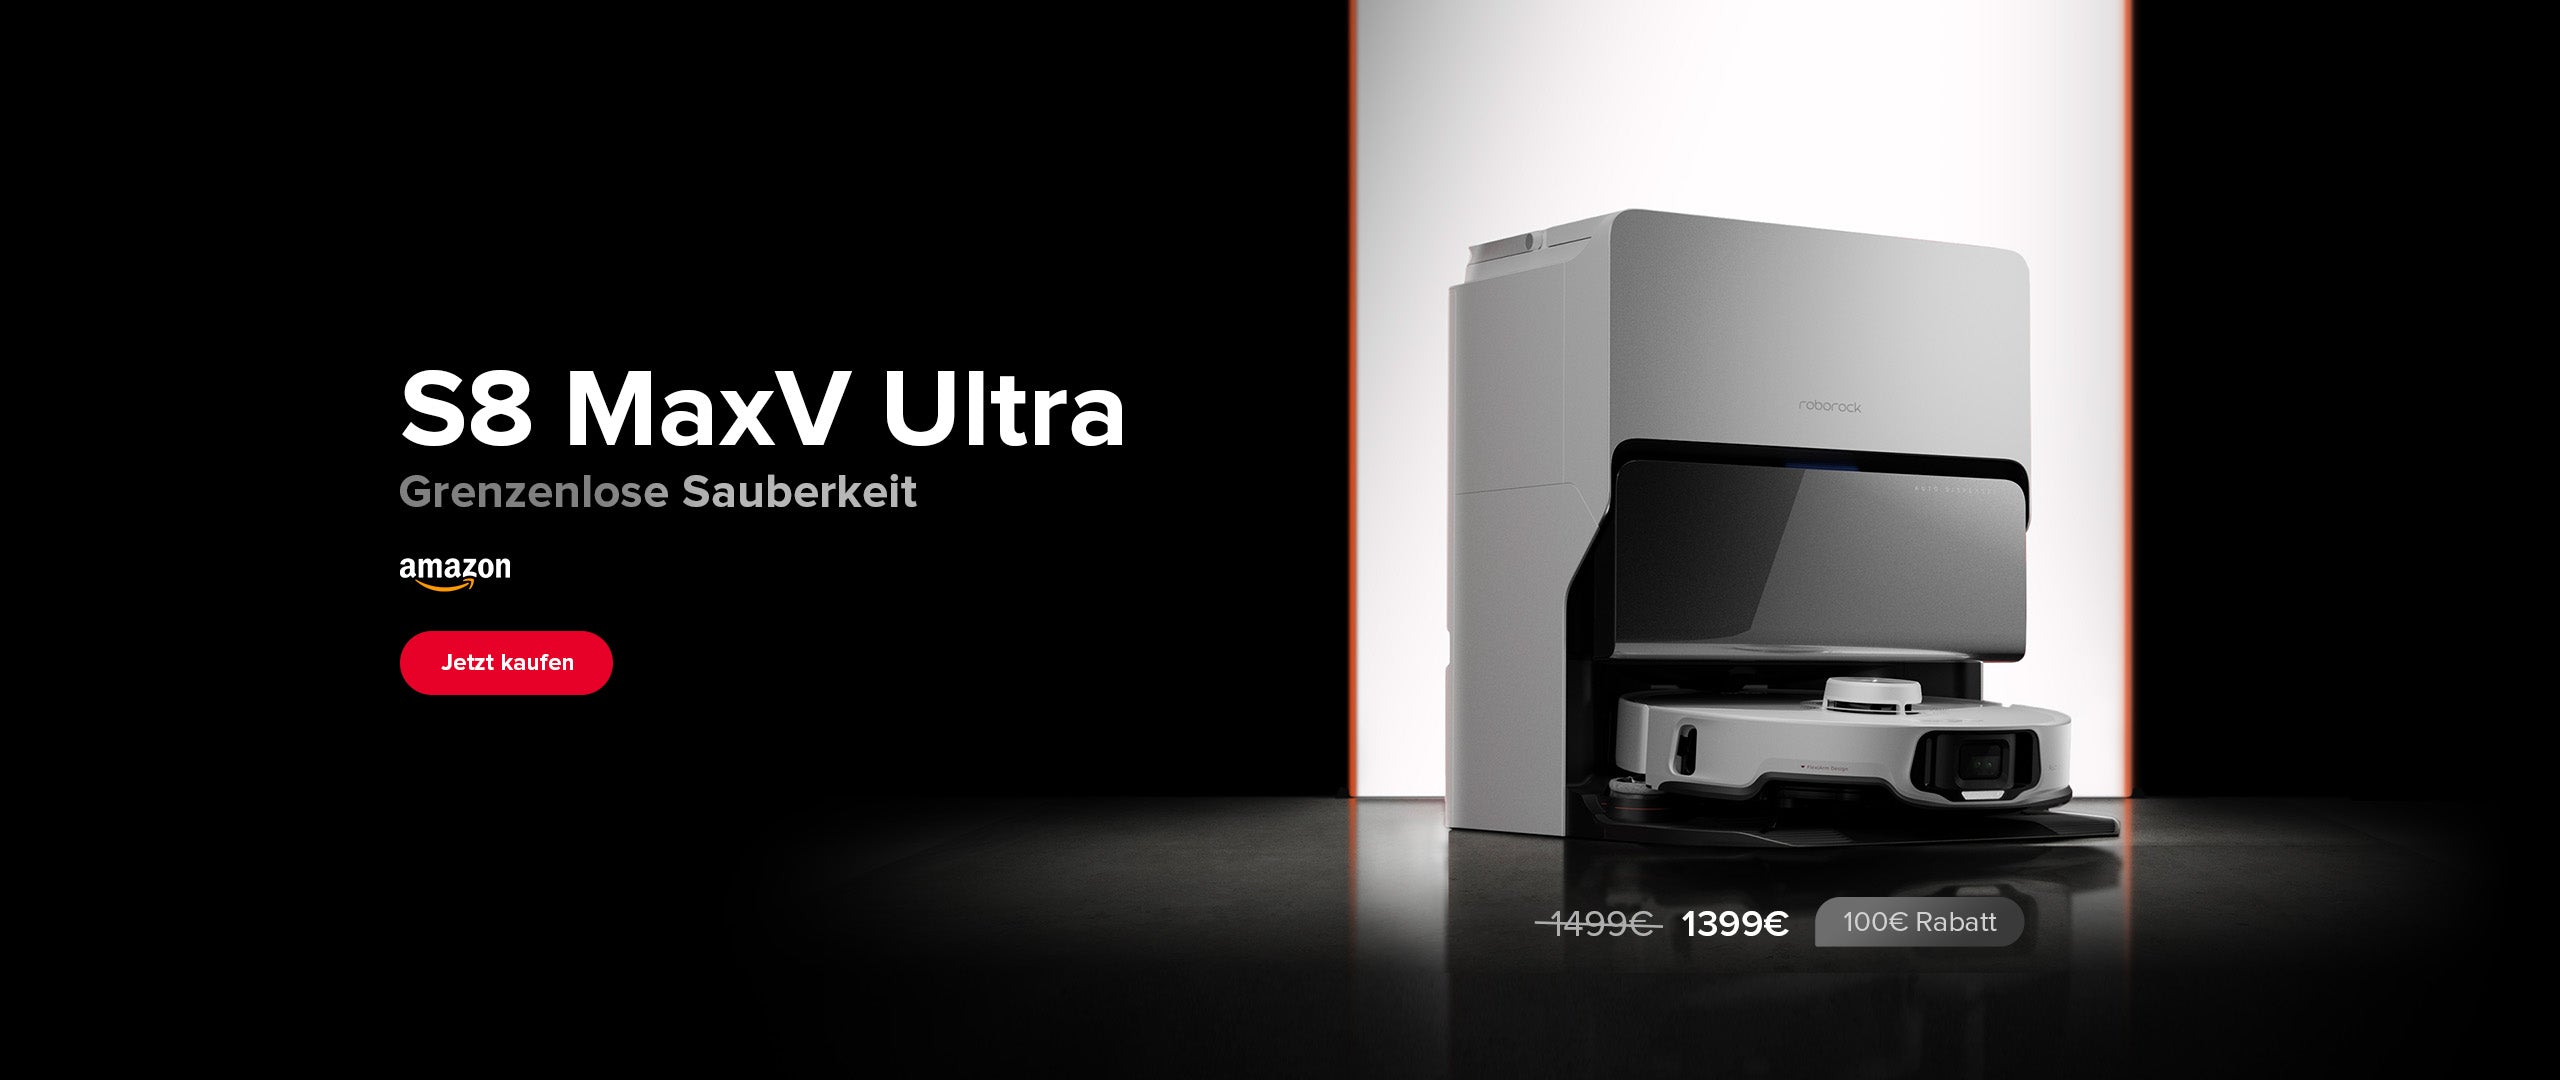 S8 MaxV Ultra Open Sale Amazon